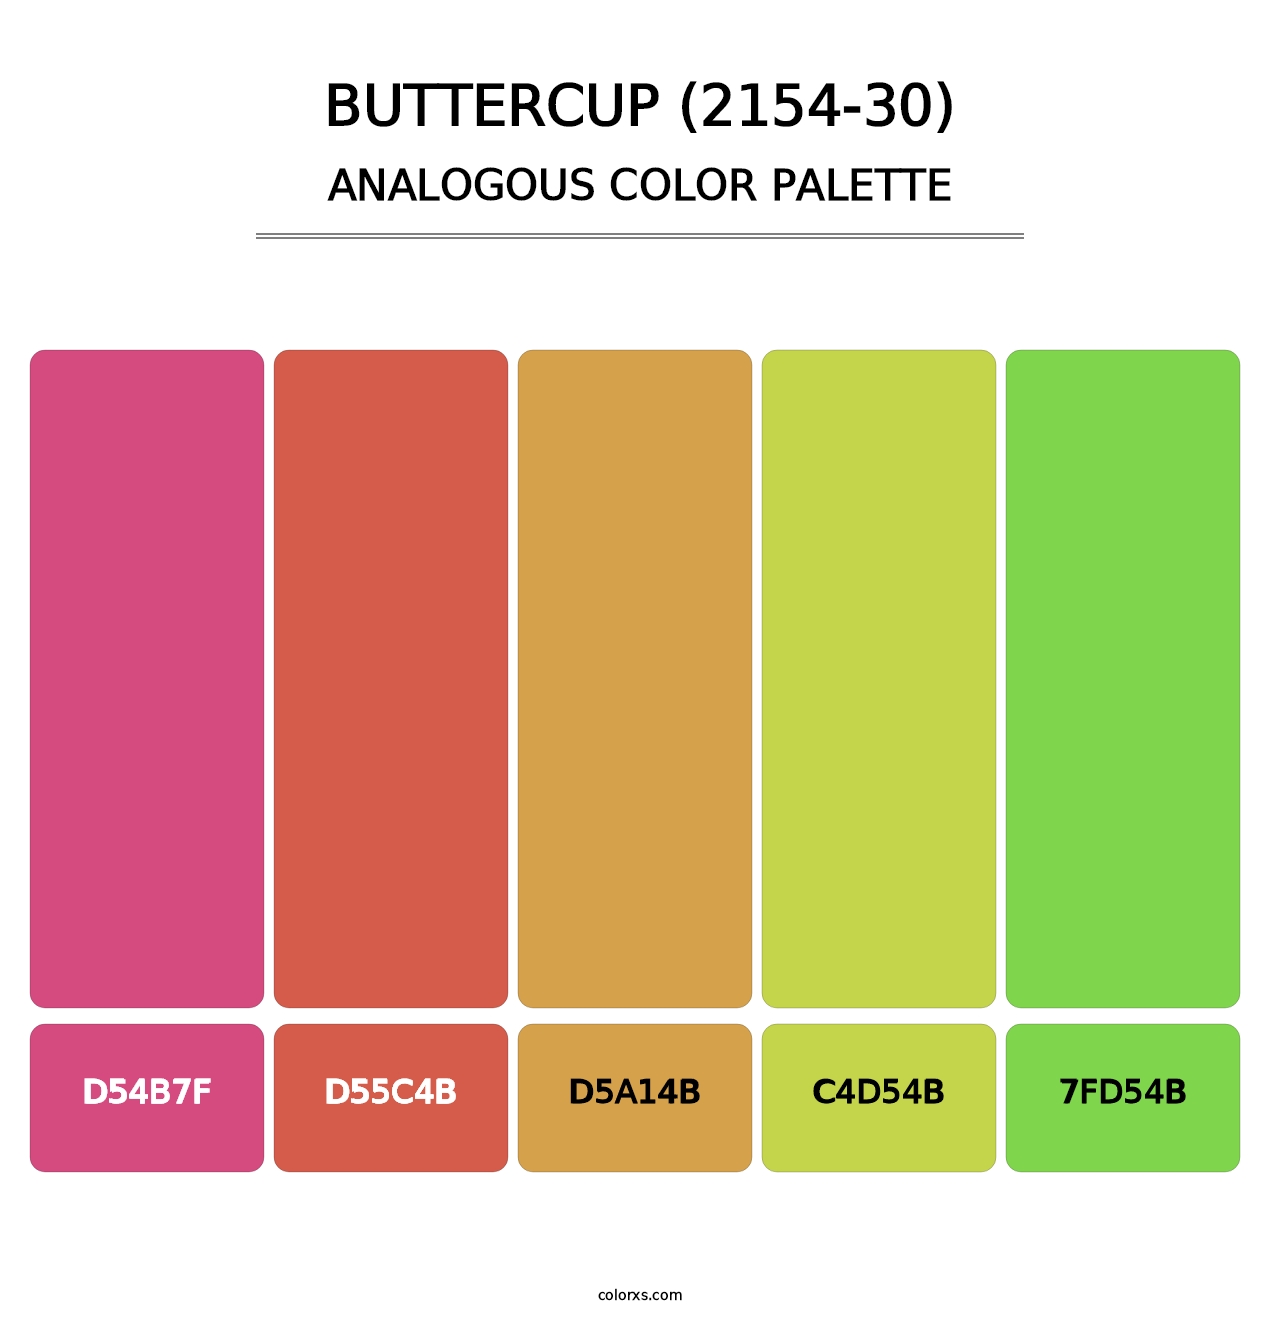 Buttercup (2154-30) - Analogous Color Palette